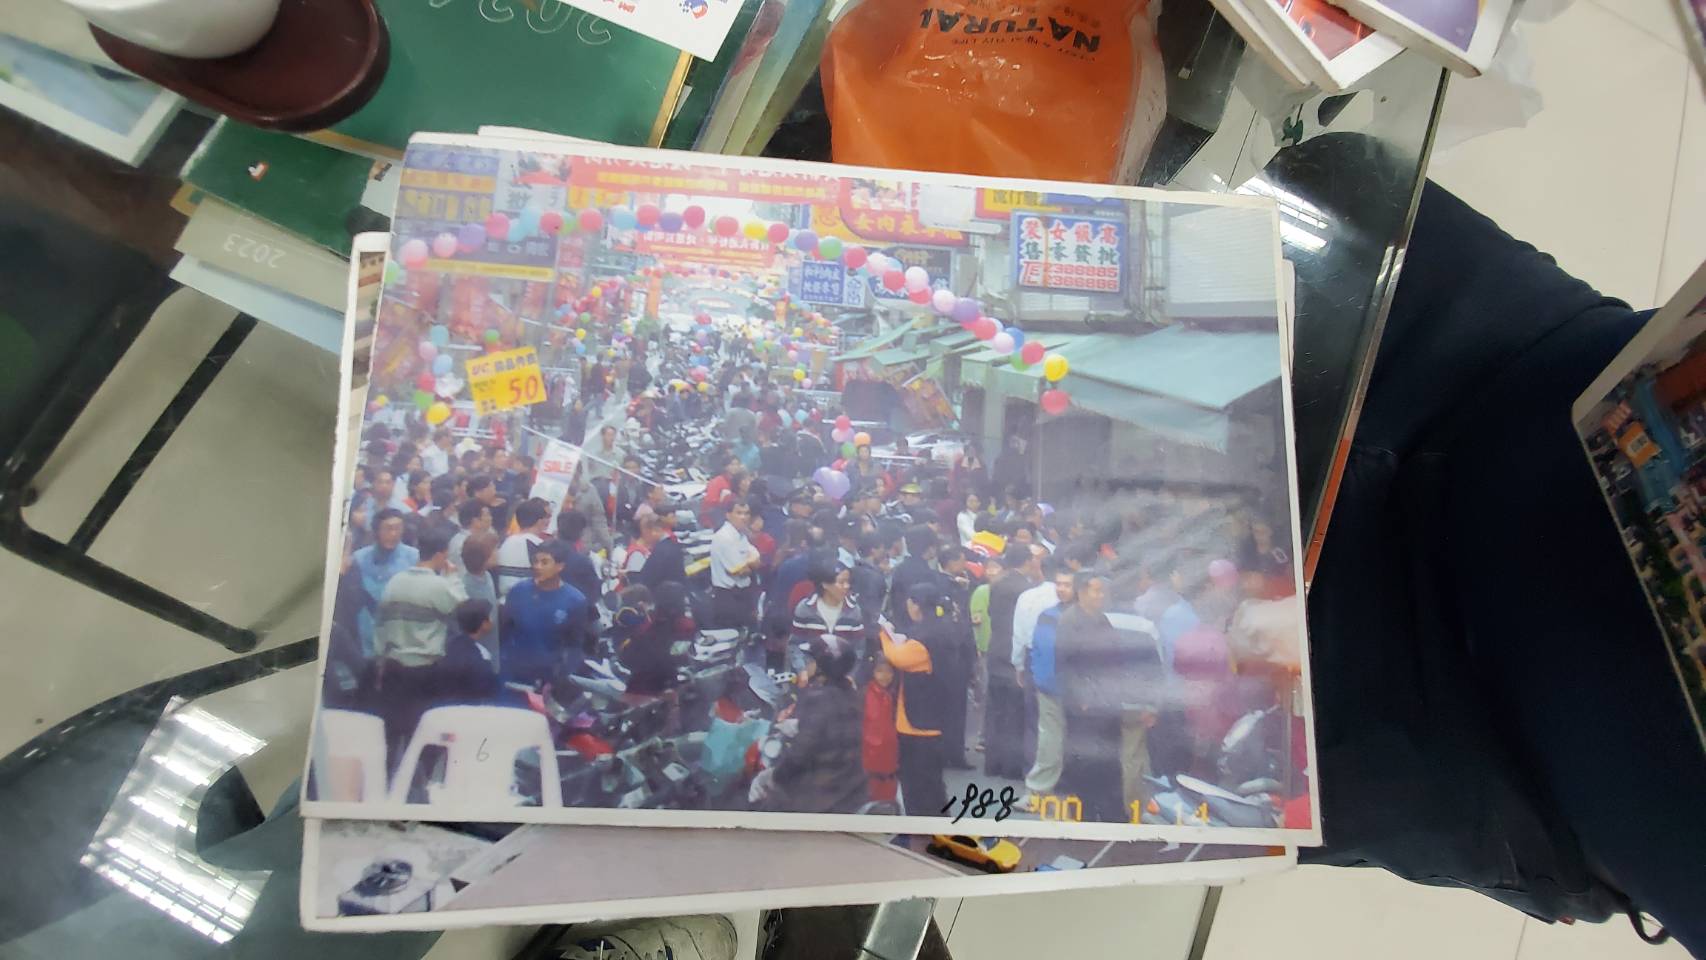 长明街的店家拿出旧照片回忆商圈人潮汹涌的鼎盛状况。记者王勇超／摄影